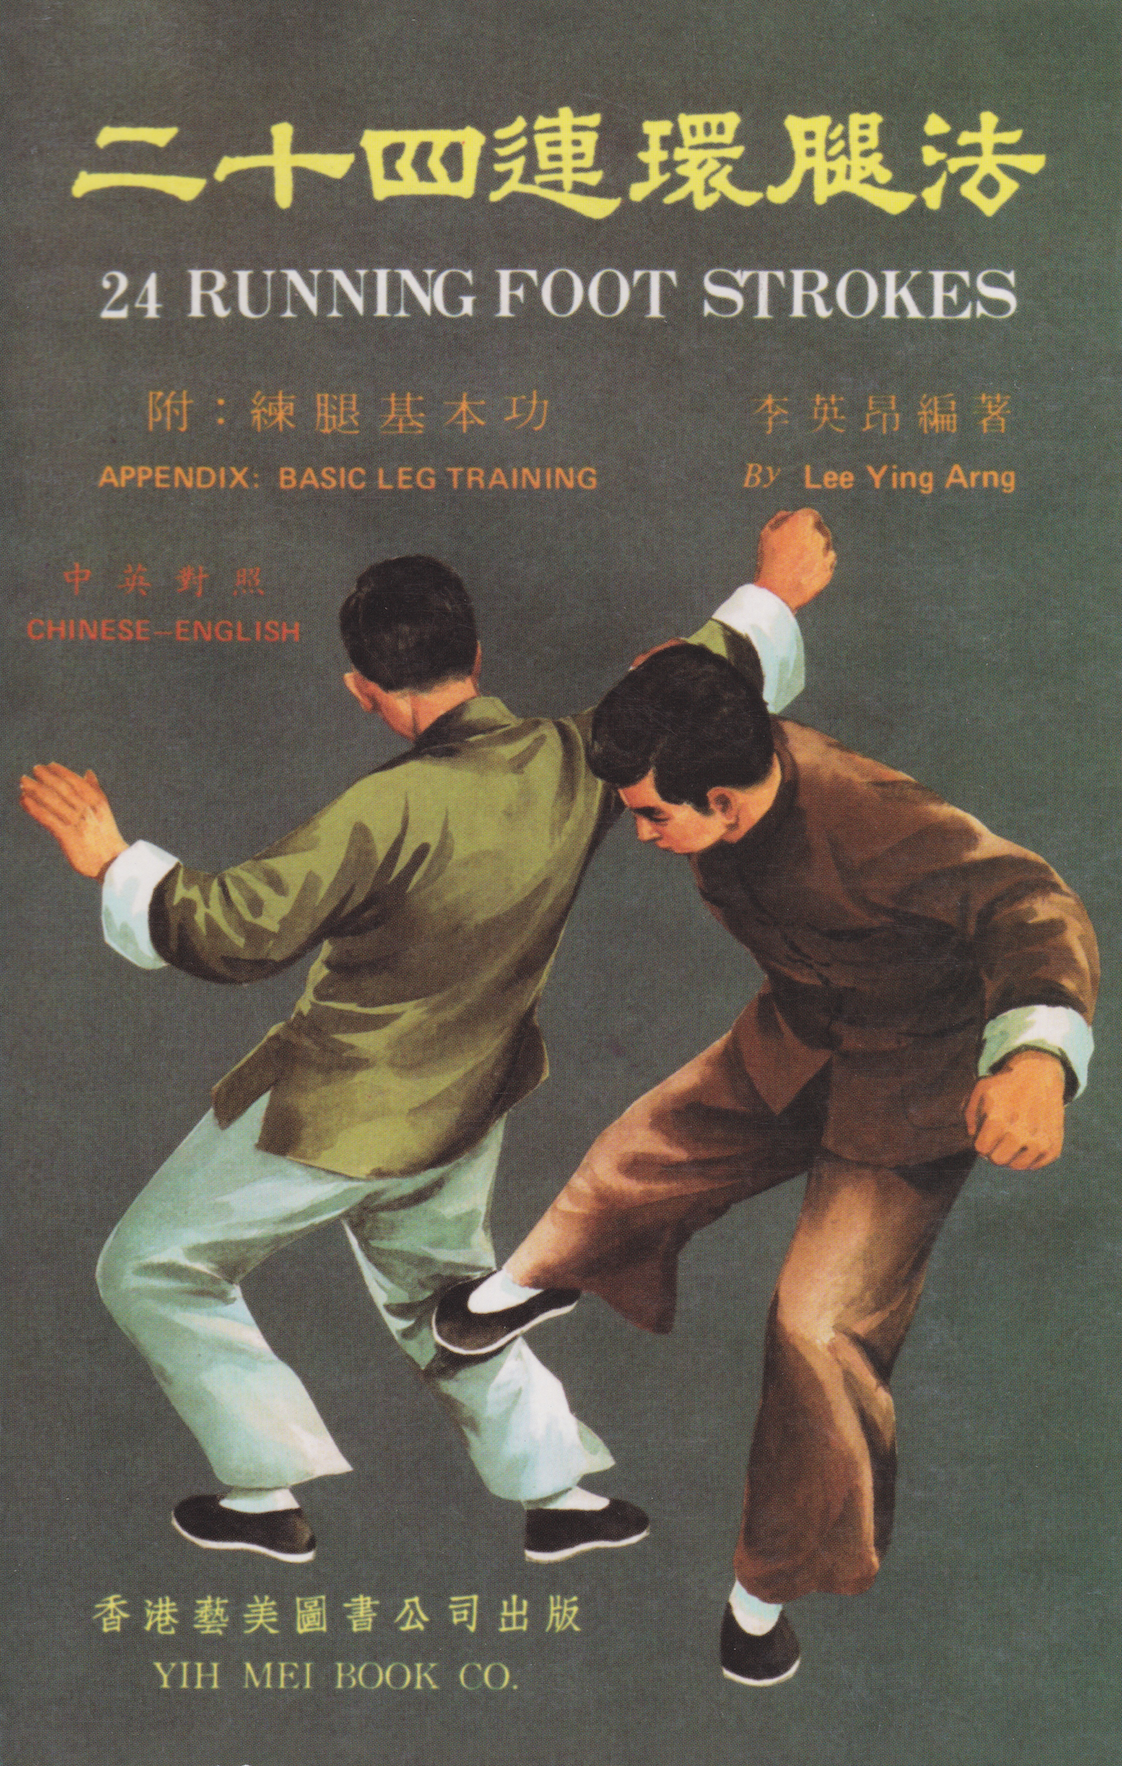 Libro de 24 movimientos del pie al correr de Lee Ying Arng